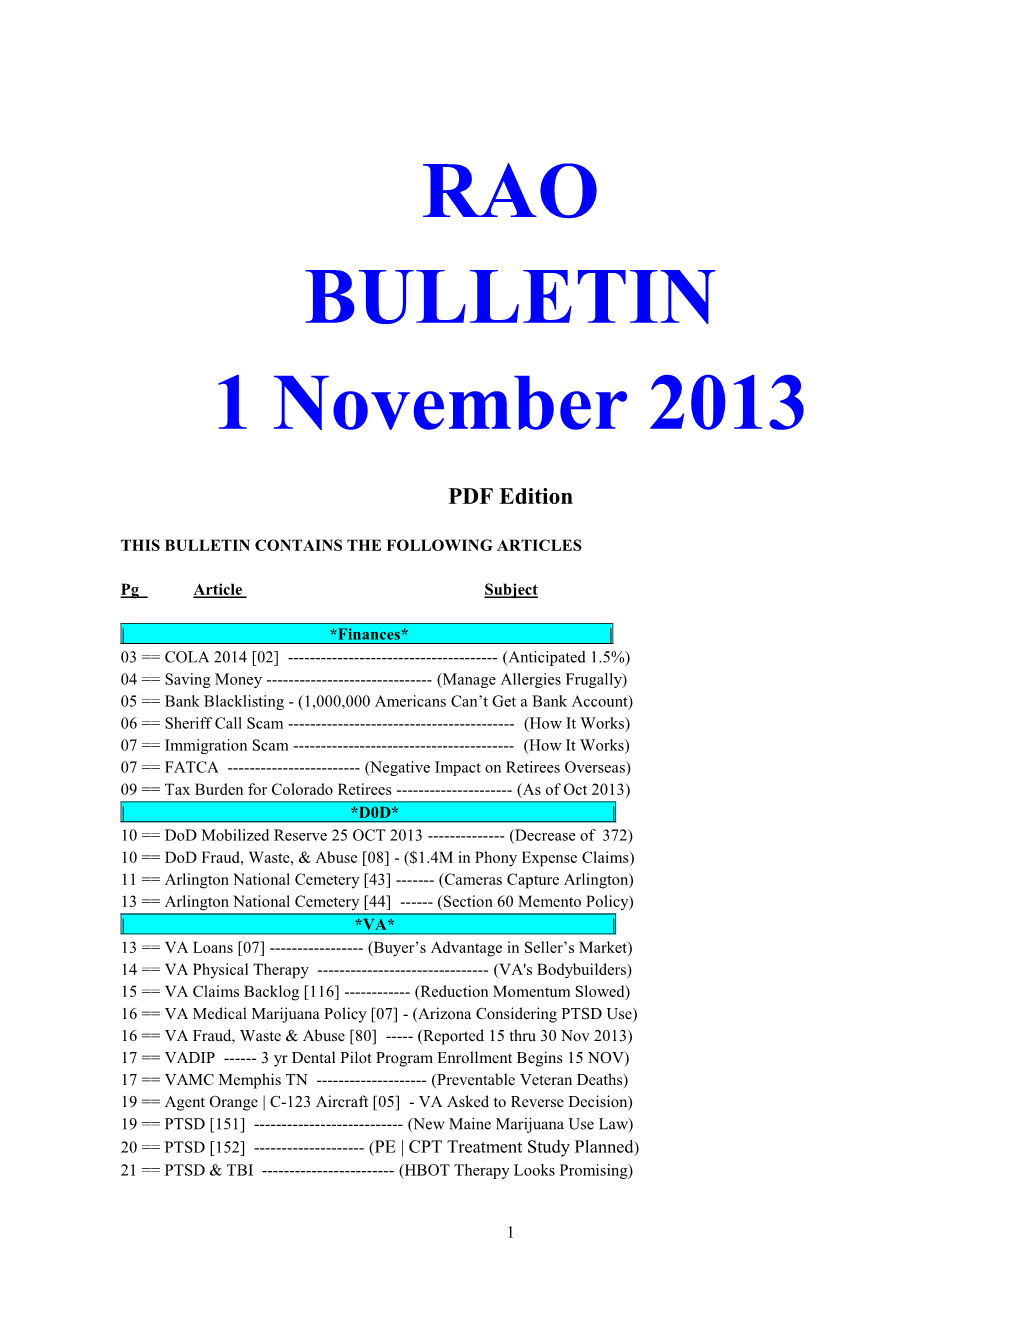 RAO BULLETIN 1 November 2013